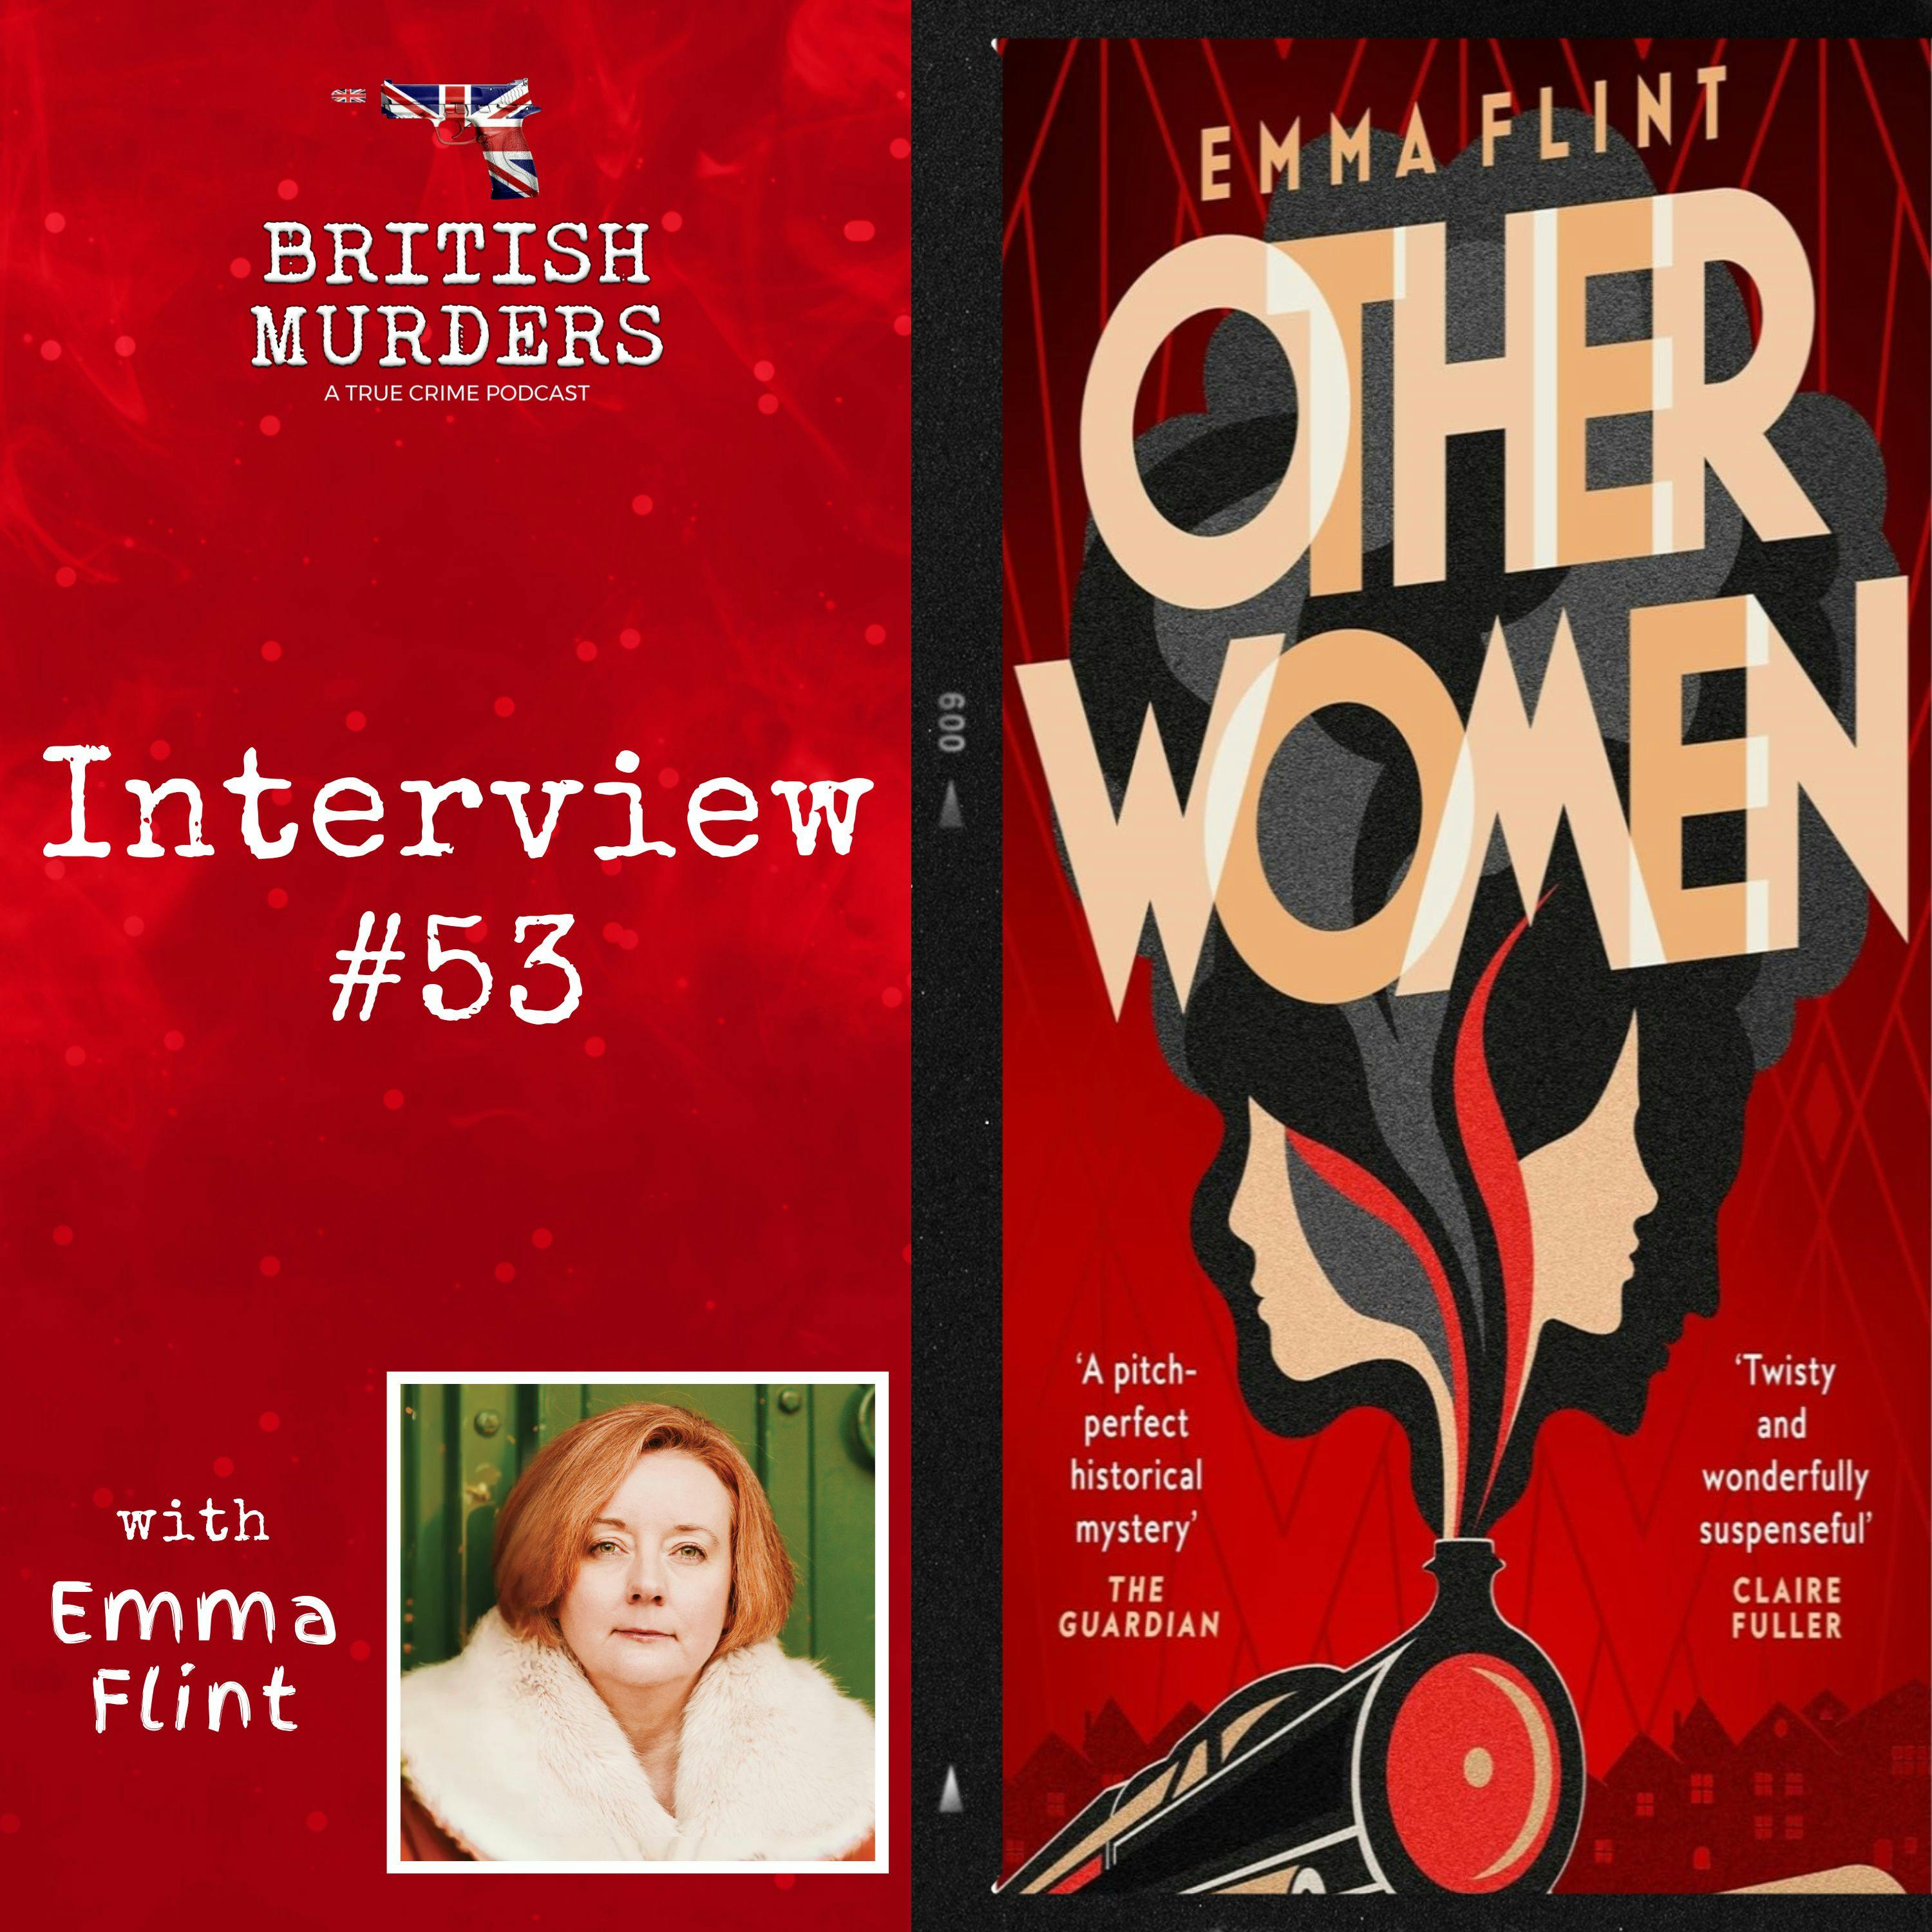 Interview #53 | Other Women: Emma Flint Discusses Her Second Novel